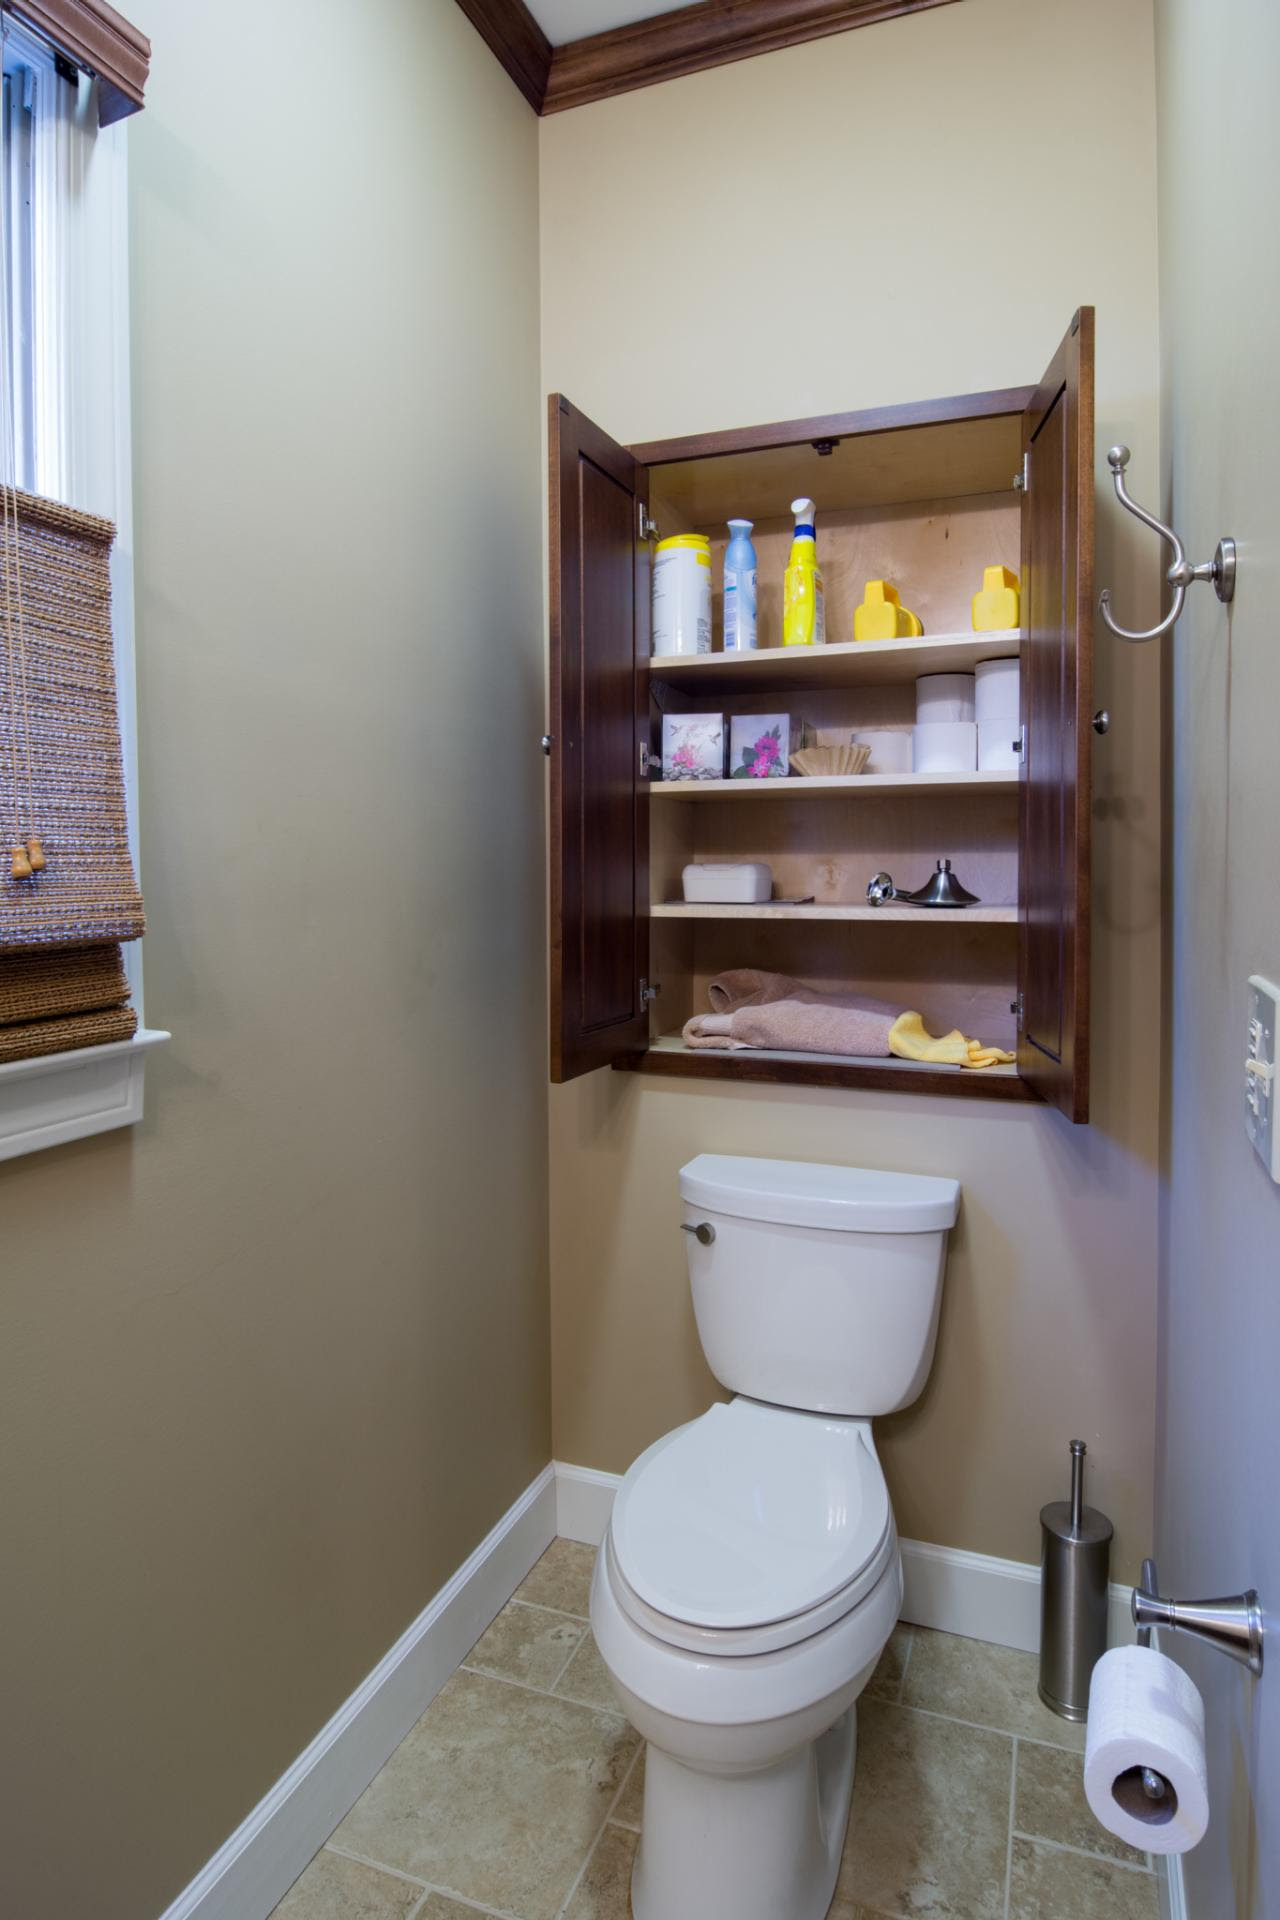 Small Space Bathroom Storage Ideas | DIY Network Blog ...